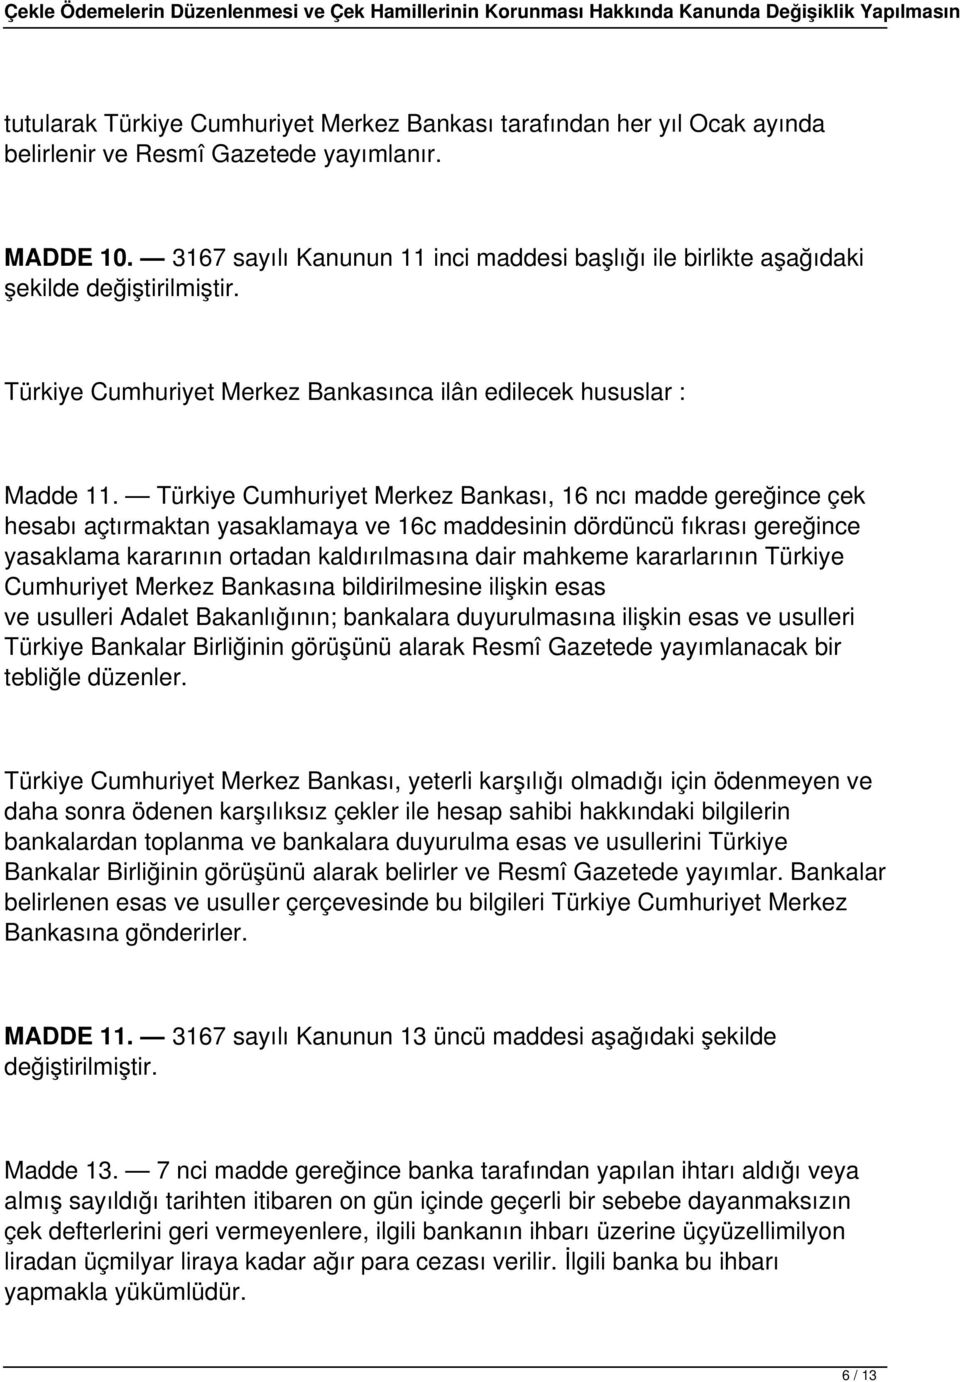 Türkiye Cumhuriyet Merkez Bankası, 16 ncı madde gereğince çek hesabı açtırmaktan yasaklamaya ve 16c maddesinin dördüncü fıkrası gereğince yasaklama kararının ortadan kaldırılmasına dair mahkeme